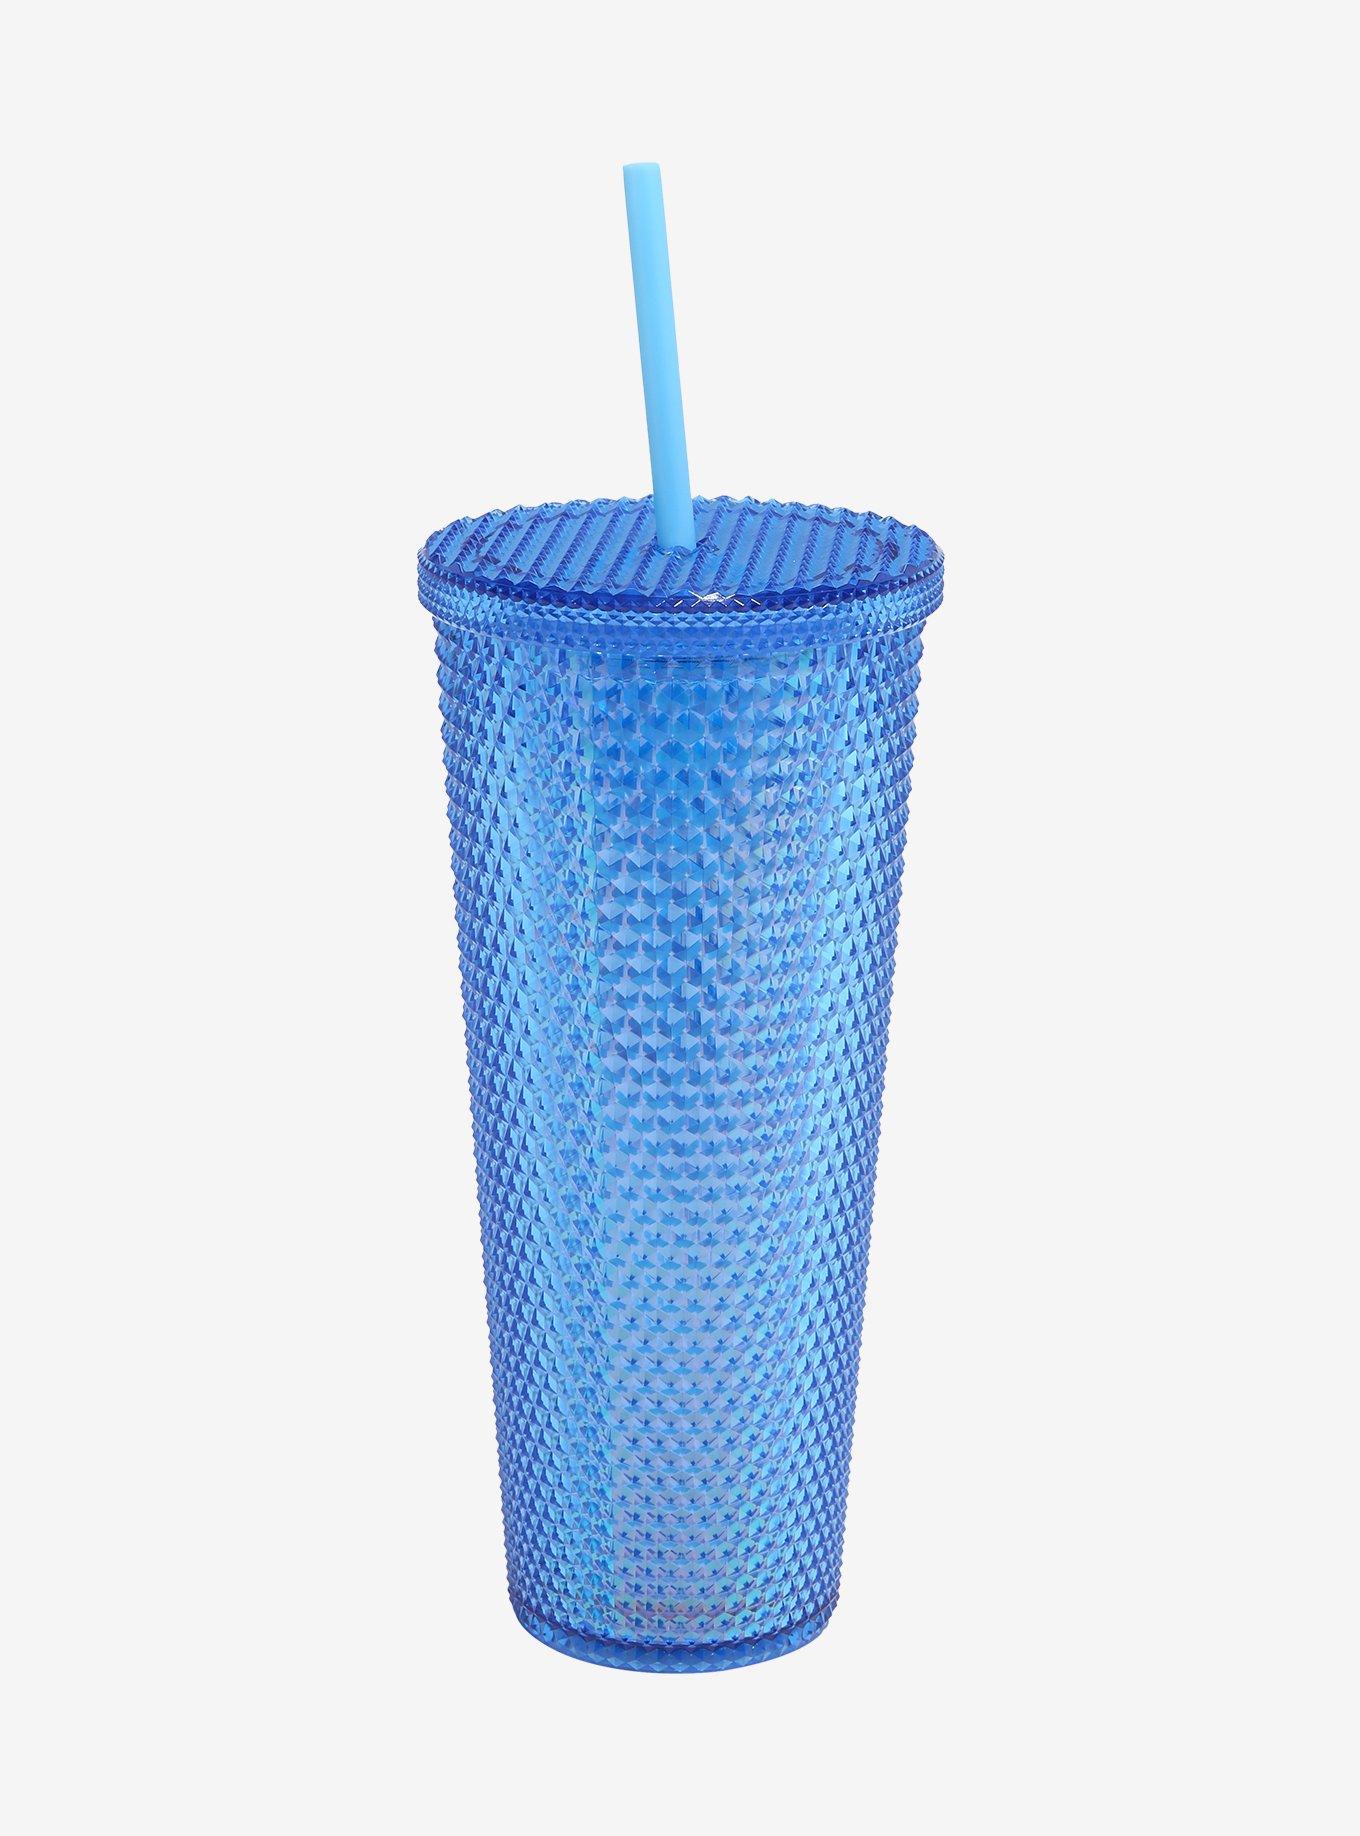 Disney Stitch Blue Pyramid Acrylic Travel Cup, , hi-res